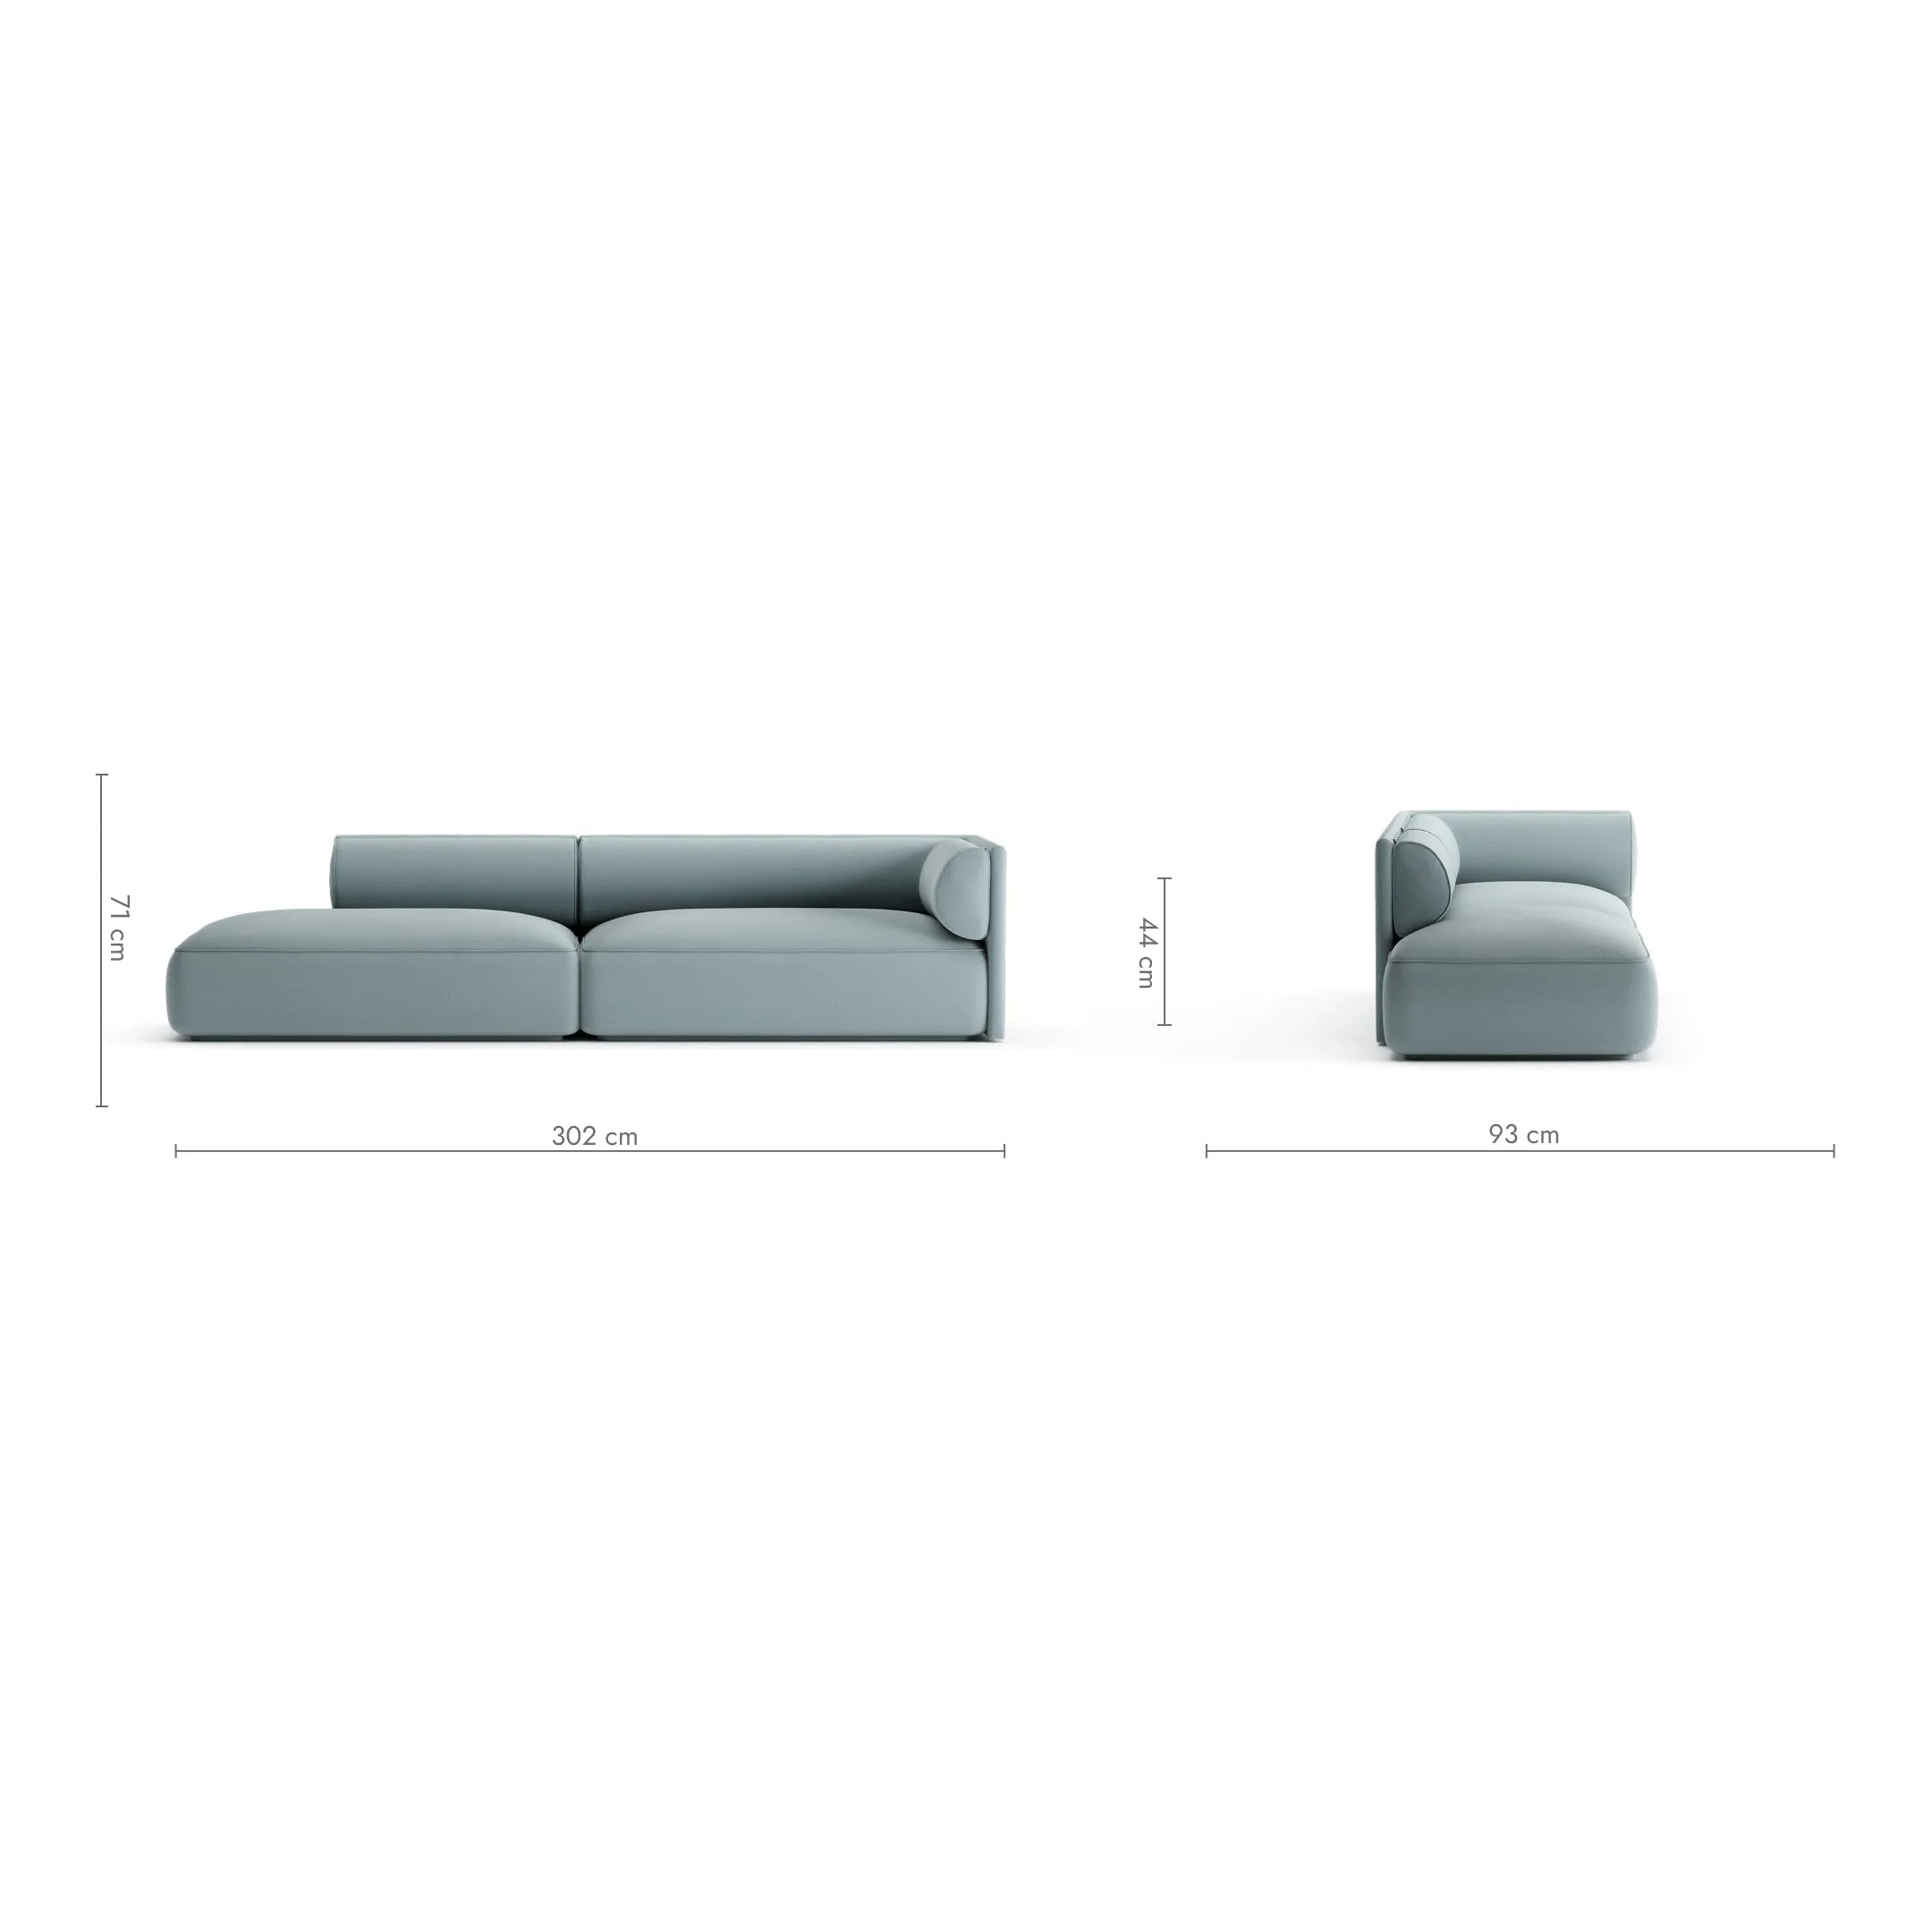 MOOD 4 vietų sofa, migdolų spalva, dešinė pusė